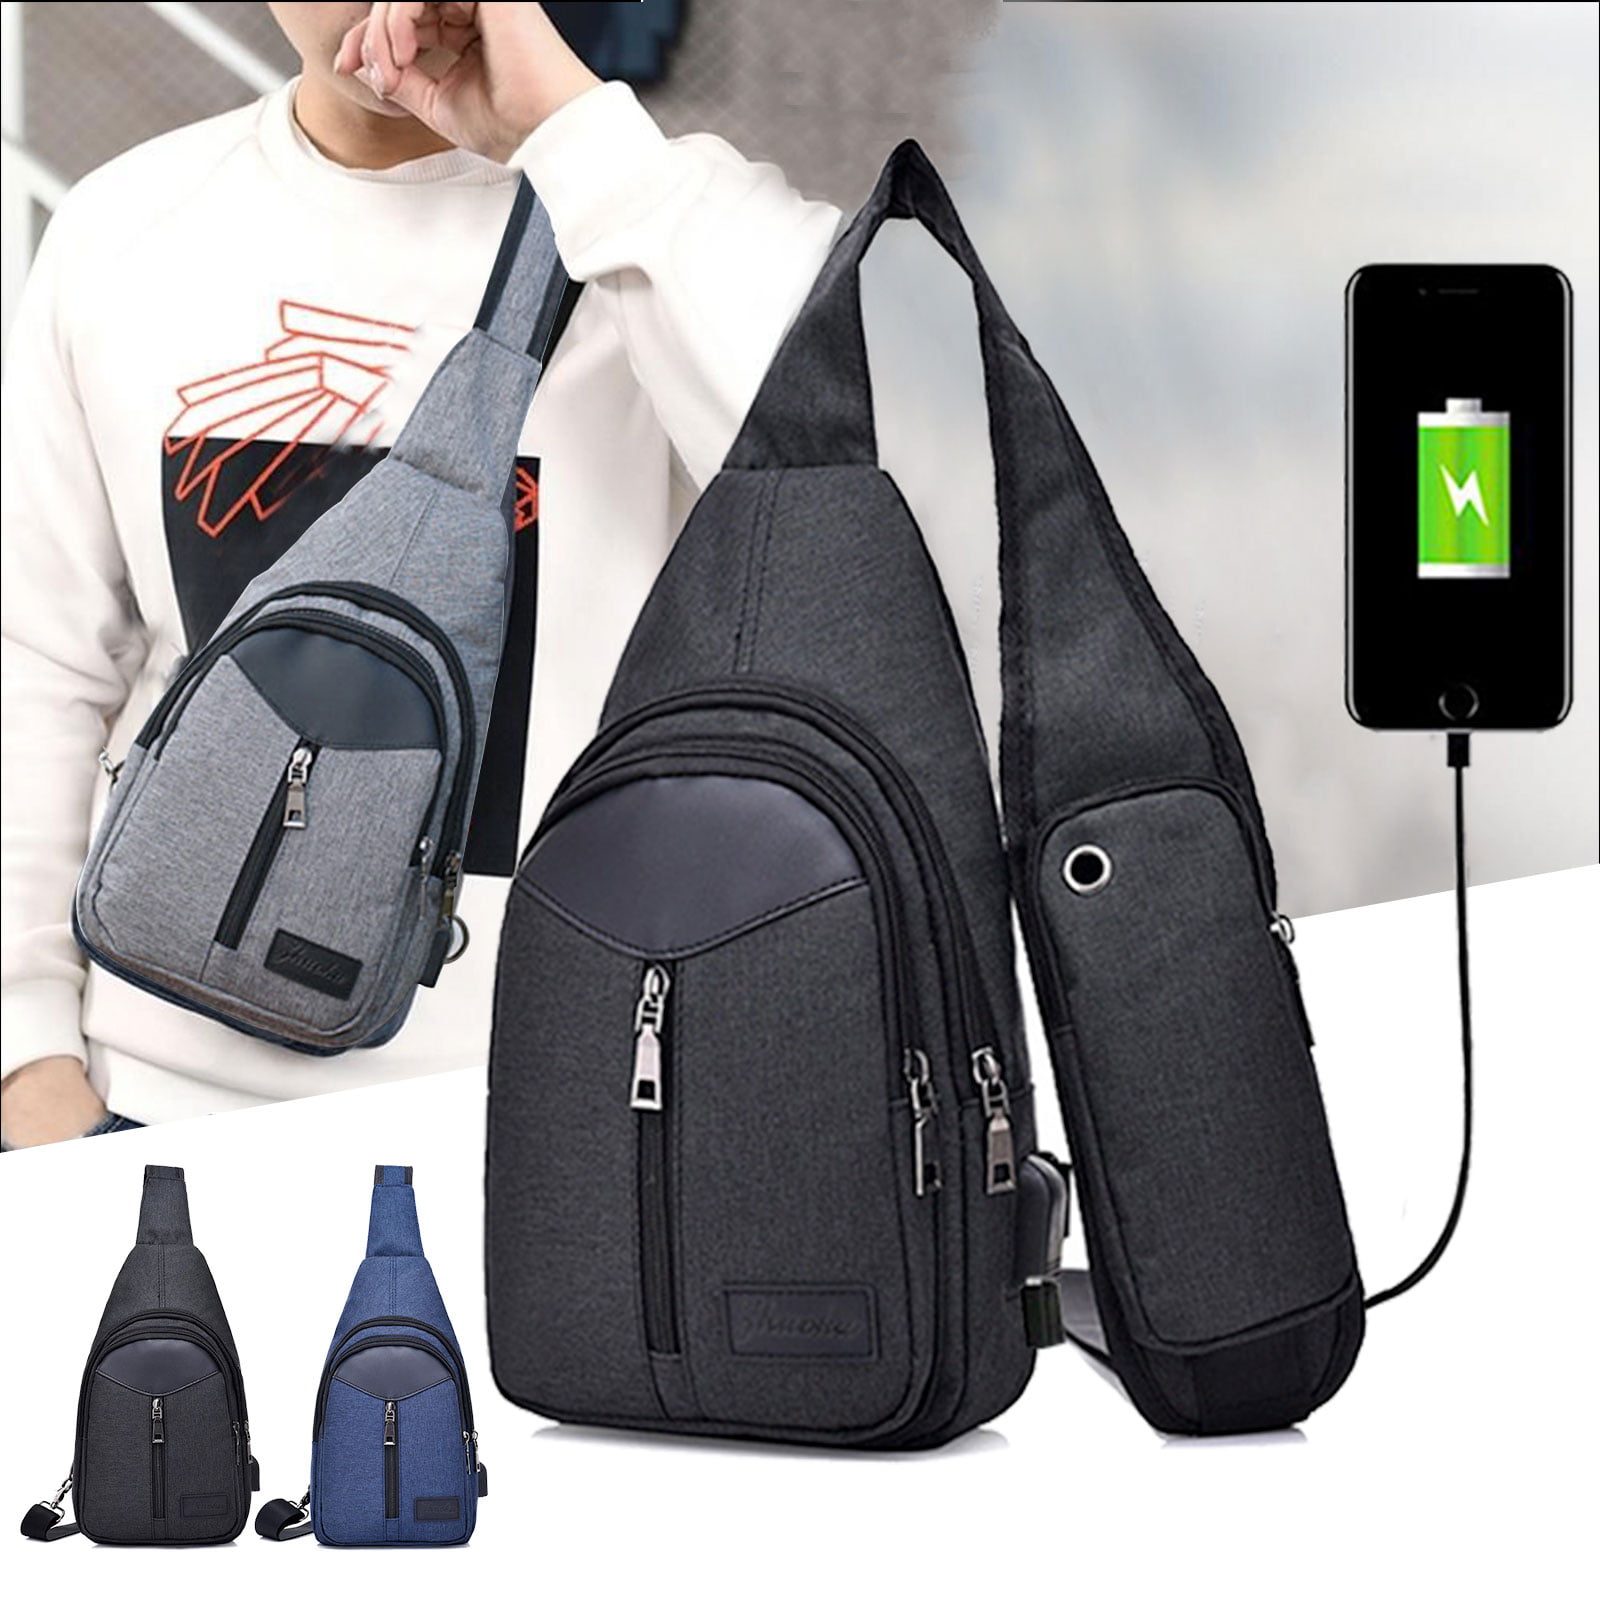 Labyrinth Thirteen Hours Tim Burton Backpack Daypack Rucksack Laptop Shoulder Bag with USB Charging Port